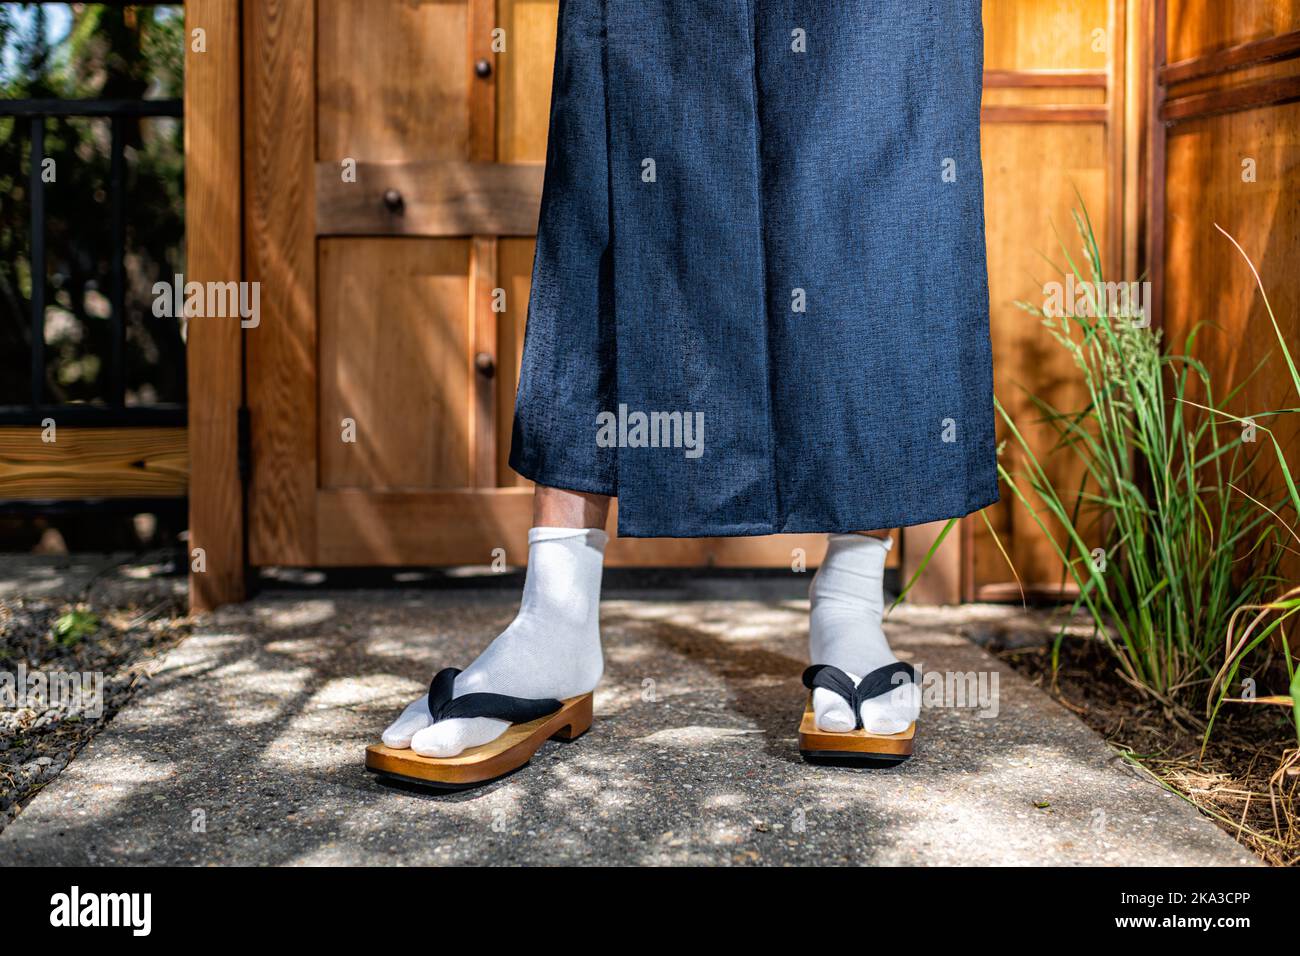 Erdgeschossansicht von Herrenfüßen in Kimono-Kostümen, geta tabi Schuhe Socken im Garten im Freien in Japan durch moderne hölzerne Tür Stockfoto